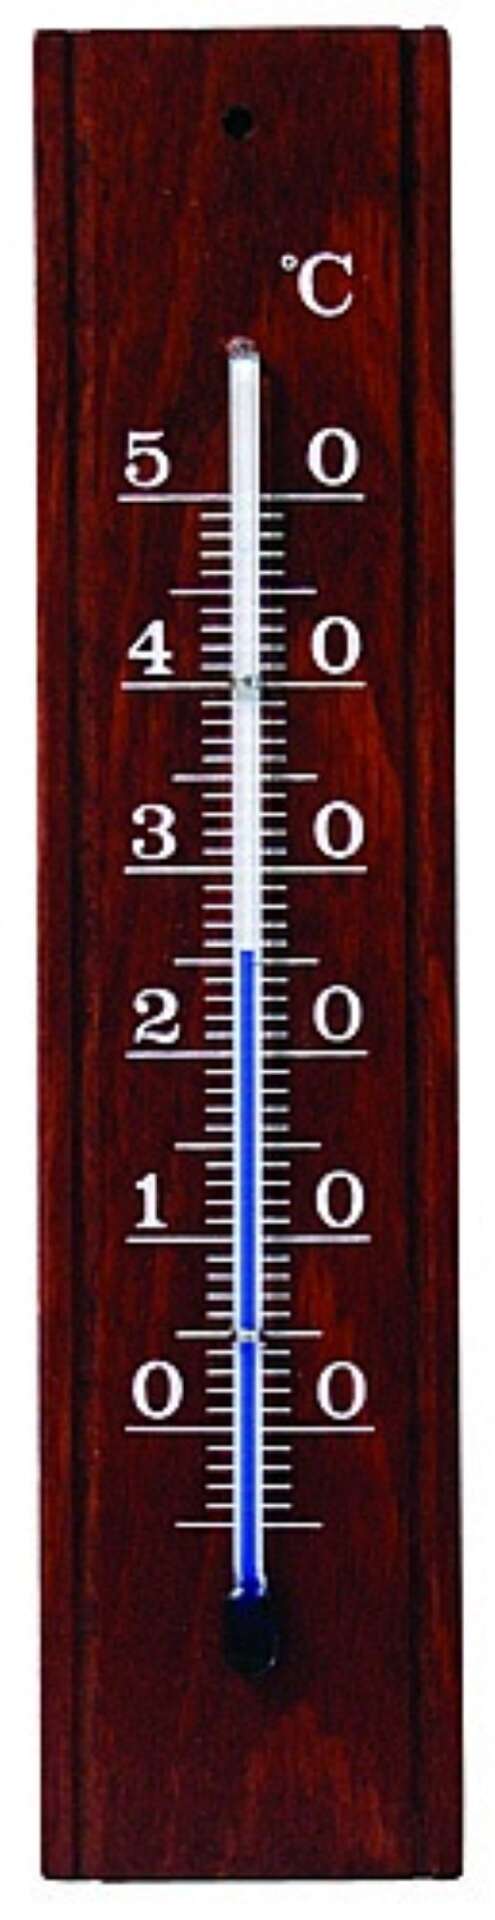 Szoba hőmérő 2043 típus, mahagóni